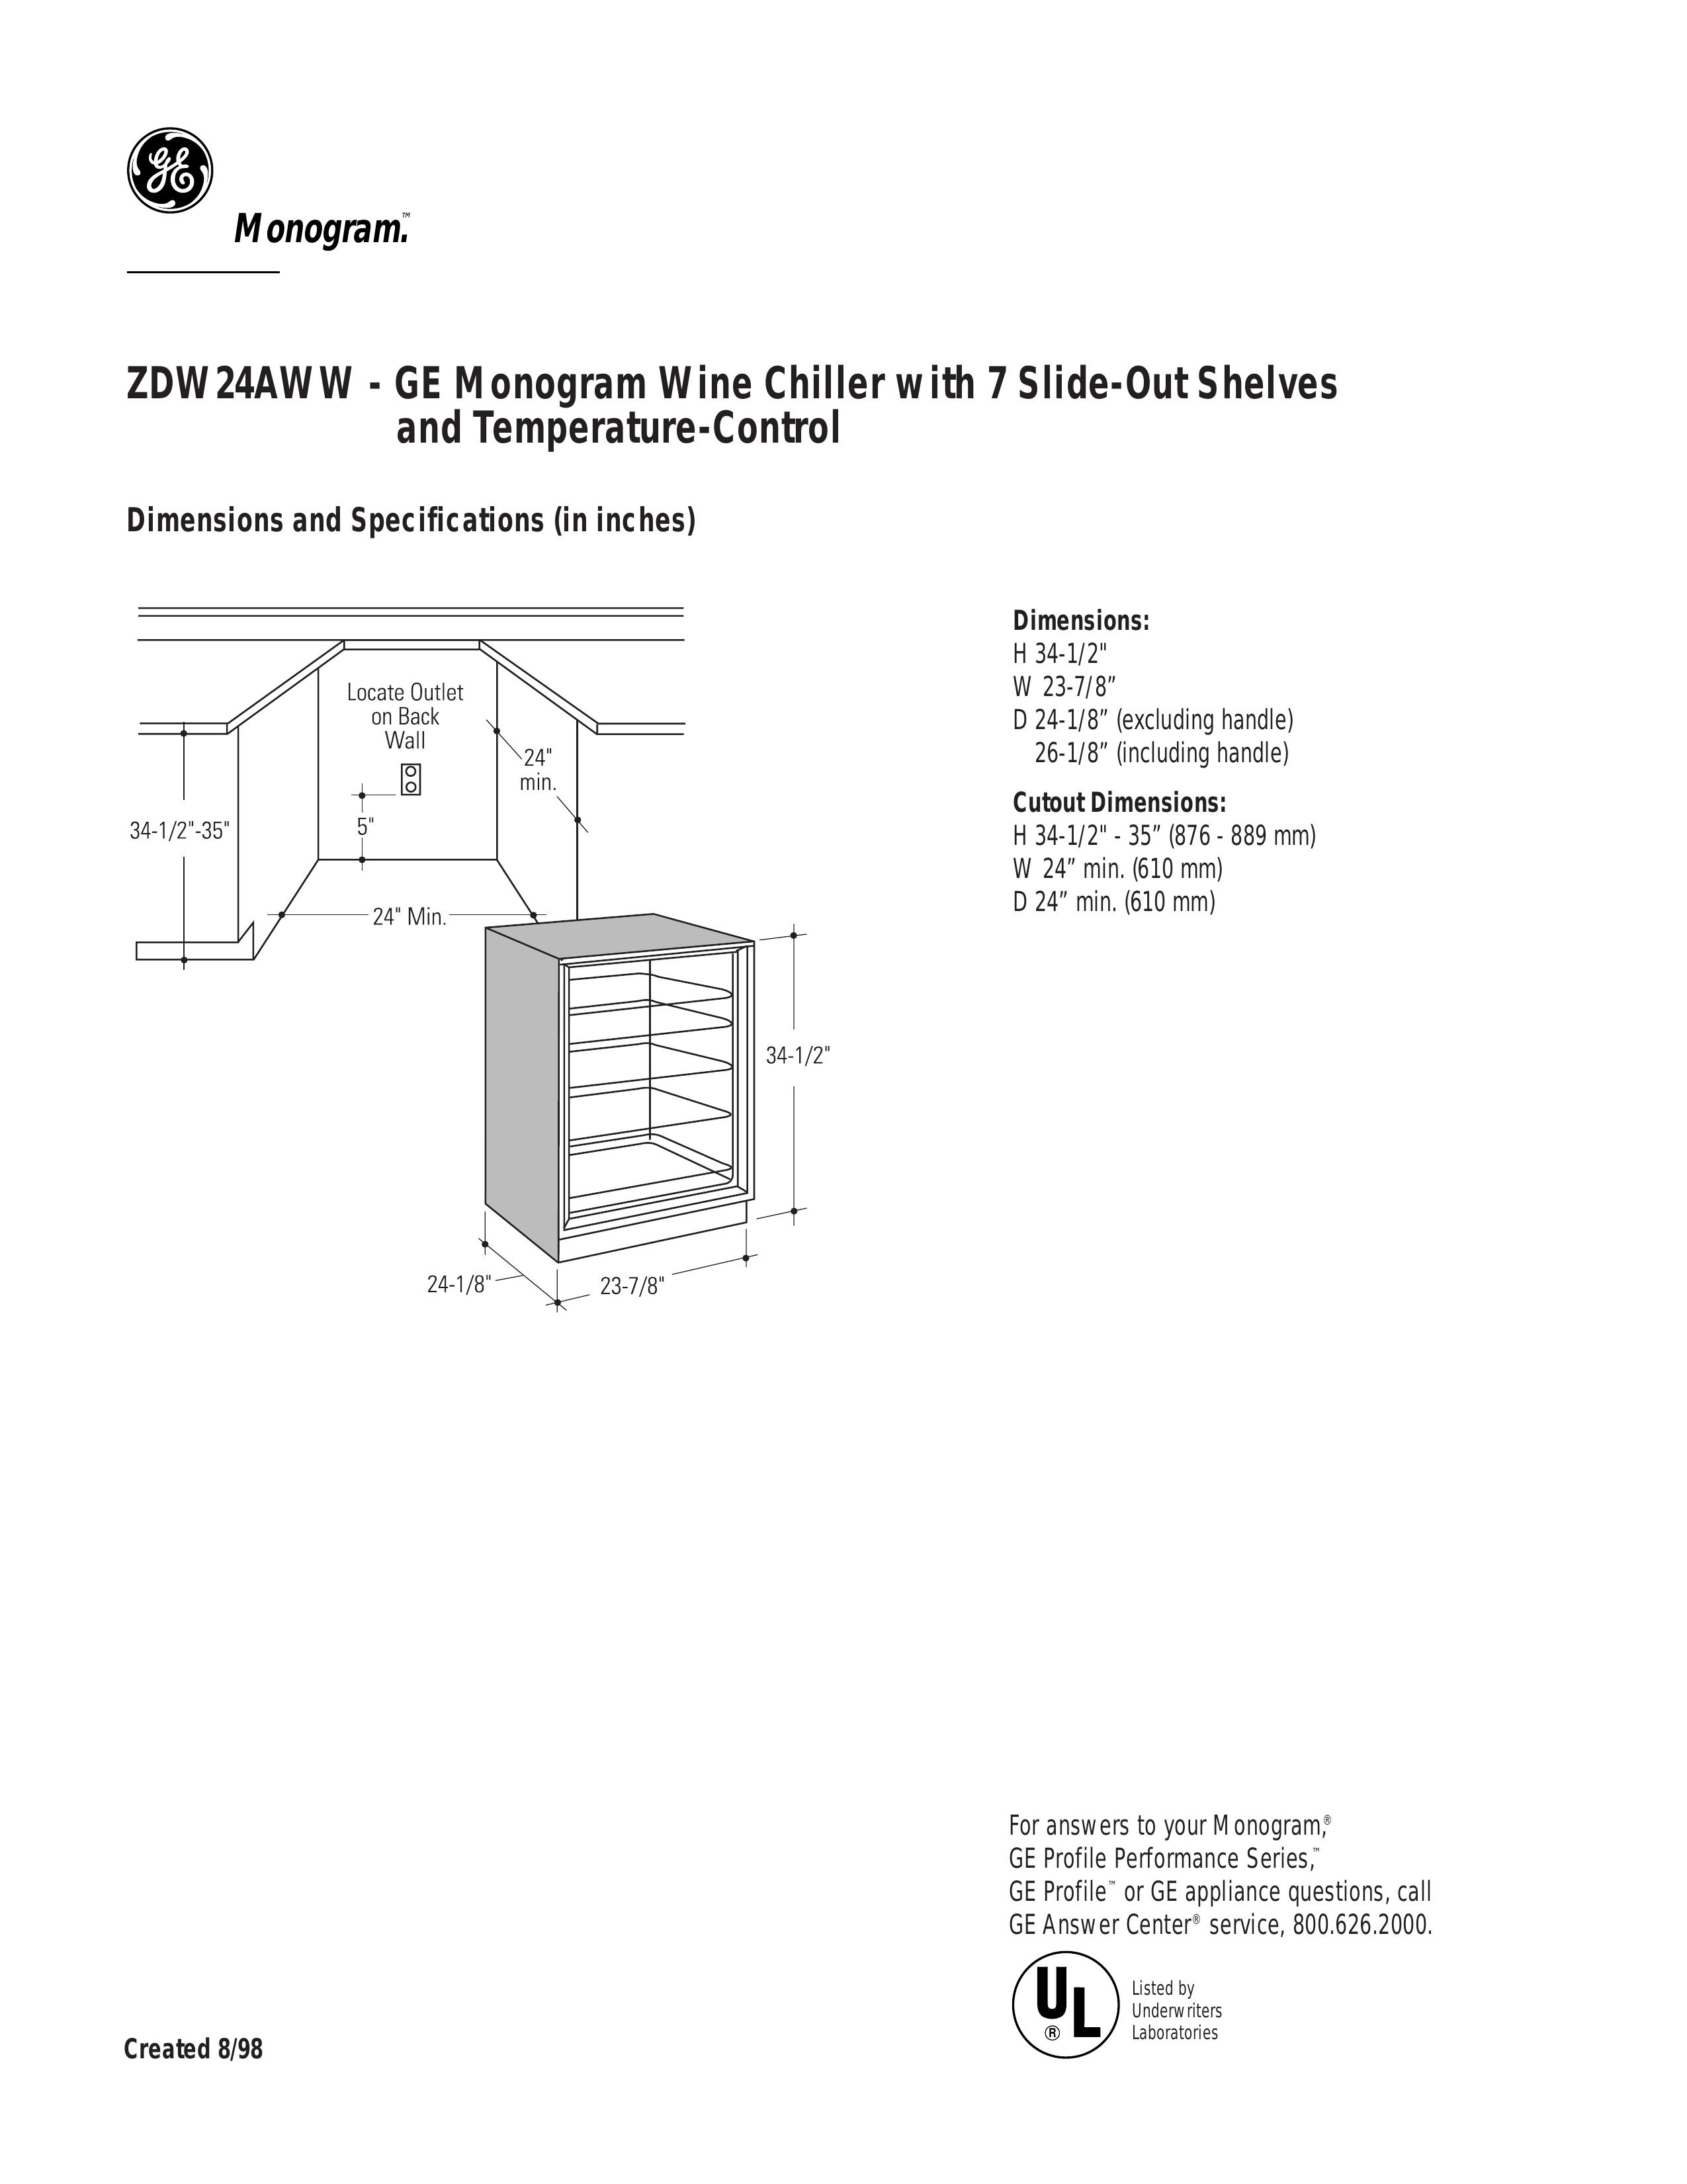 GE Monogram ZDW24AWW Refrigerator User Manual